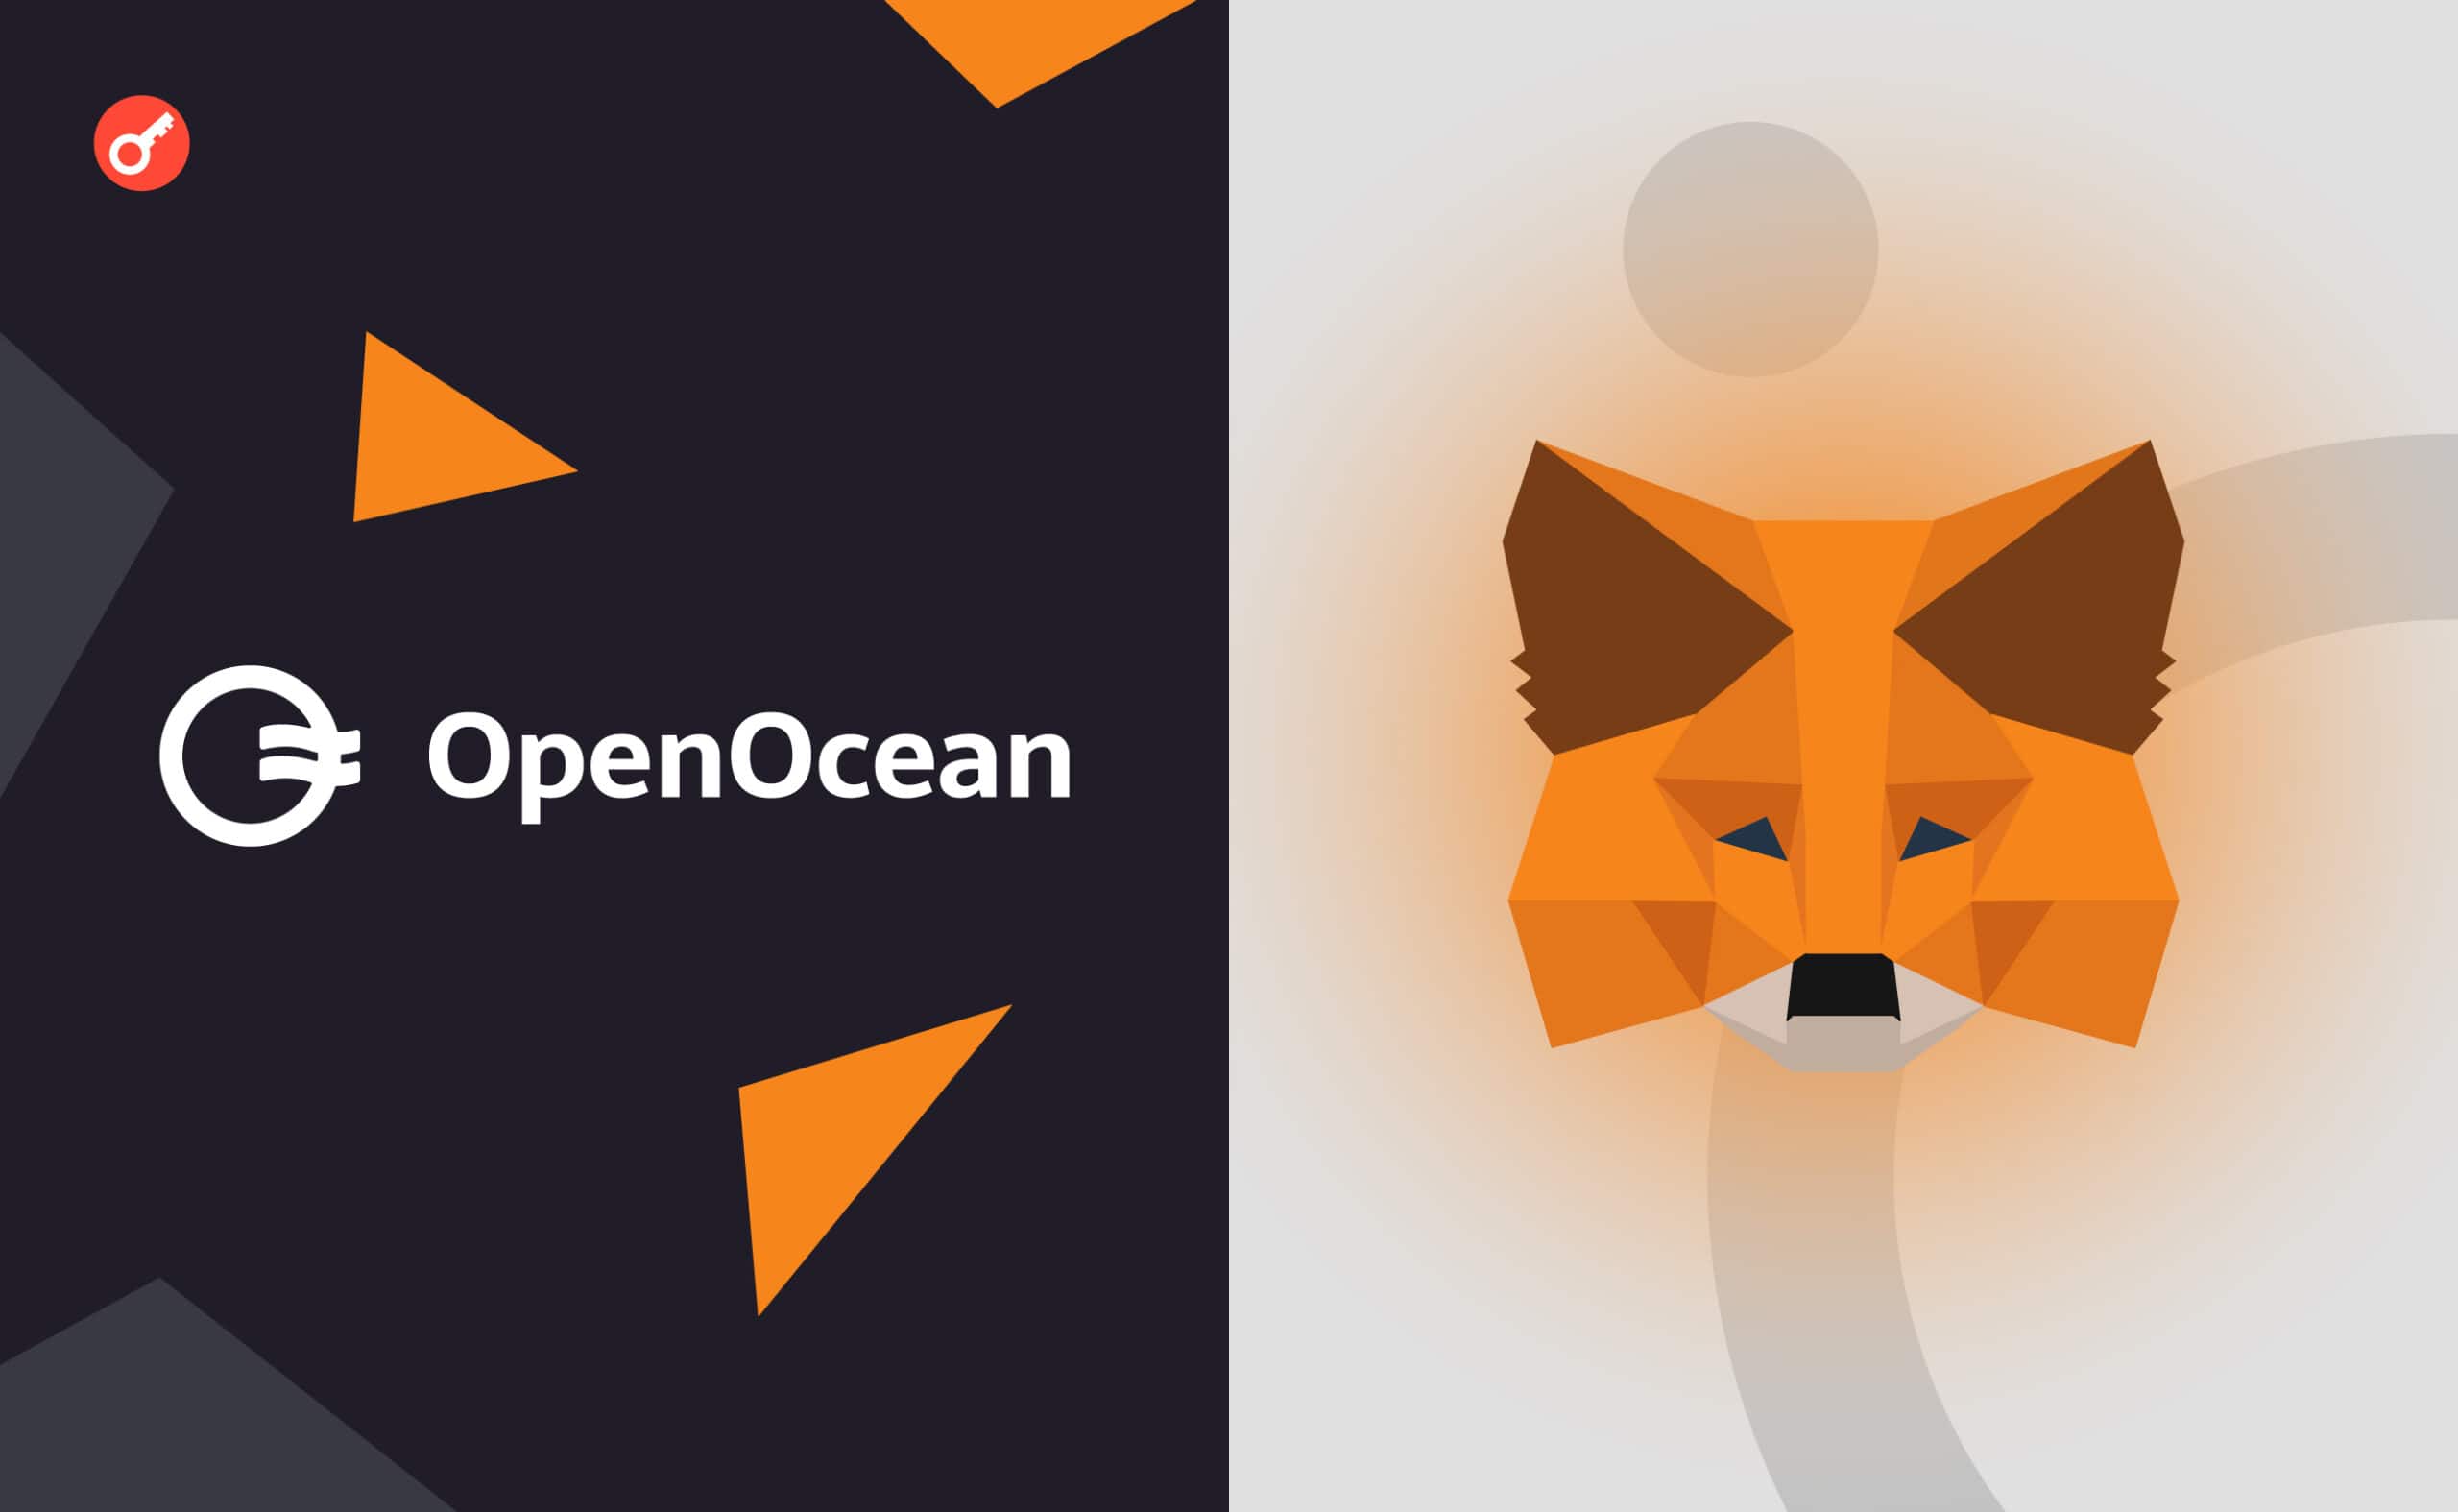 MetaMask Swaps интегрировал протокол OpenOcean. Заглавный коллаж новости.